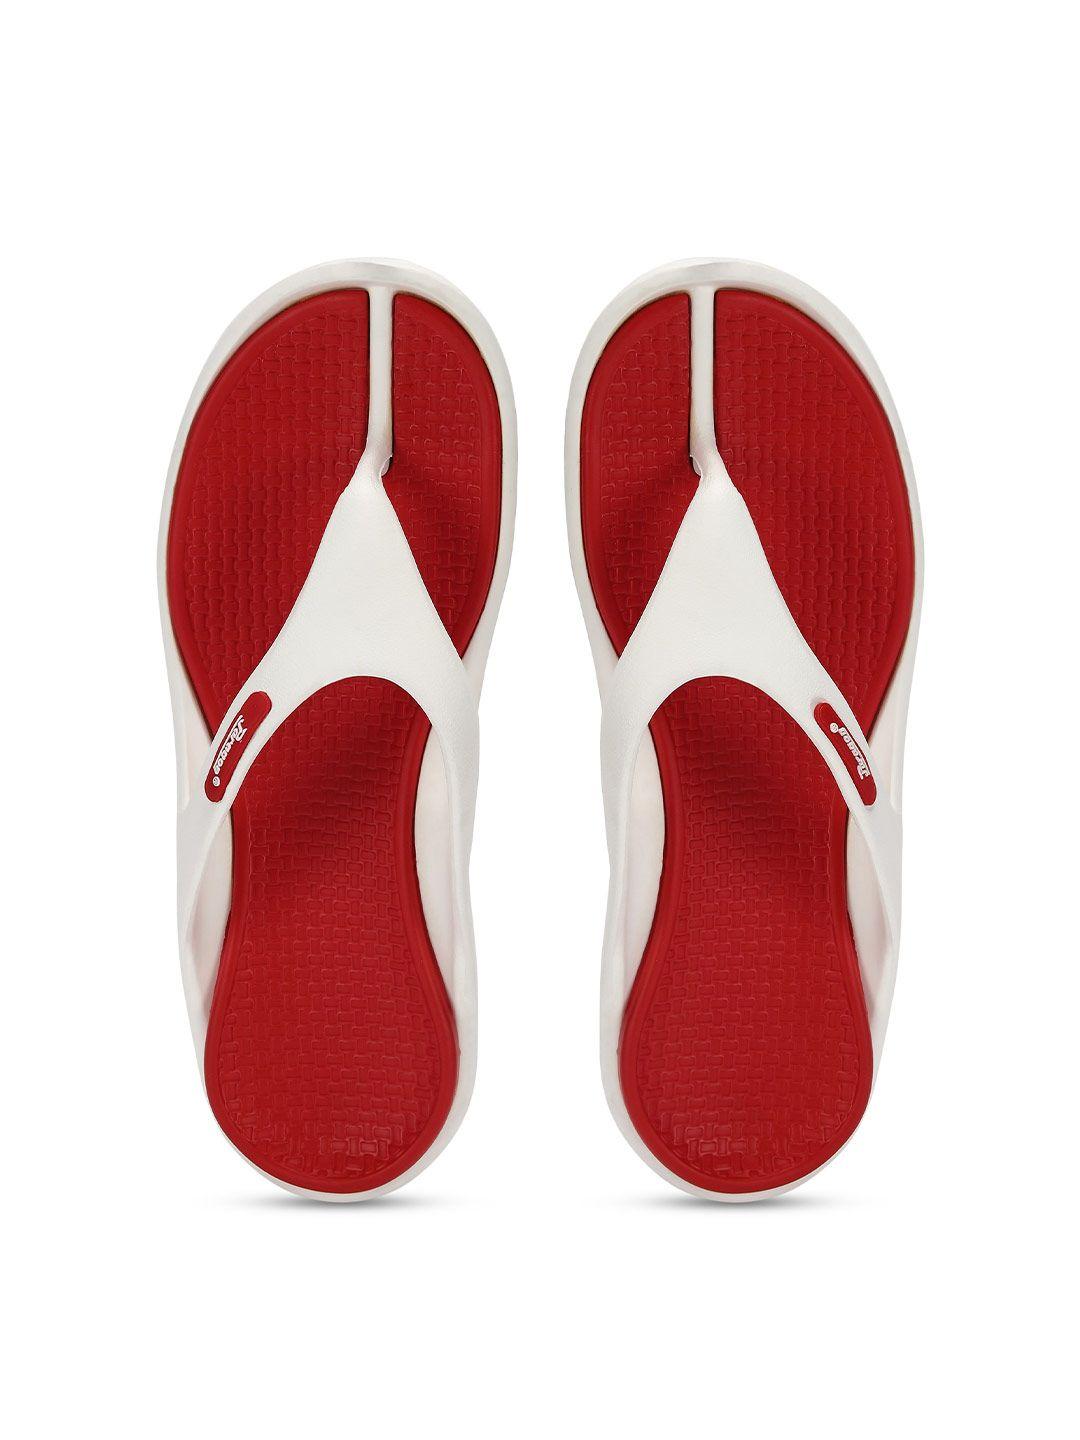 paragon men red & white thong flip-flops